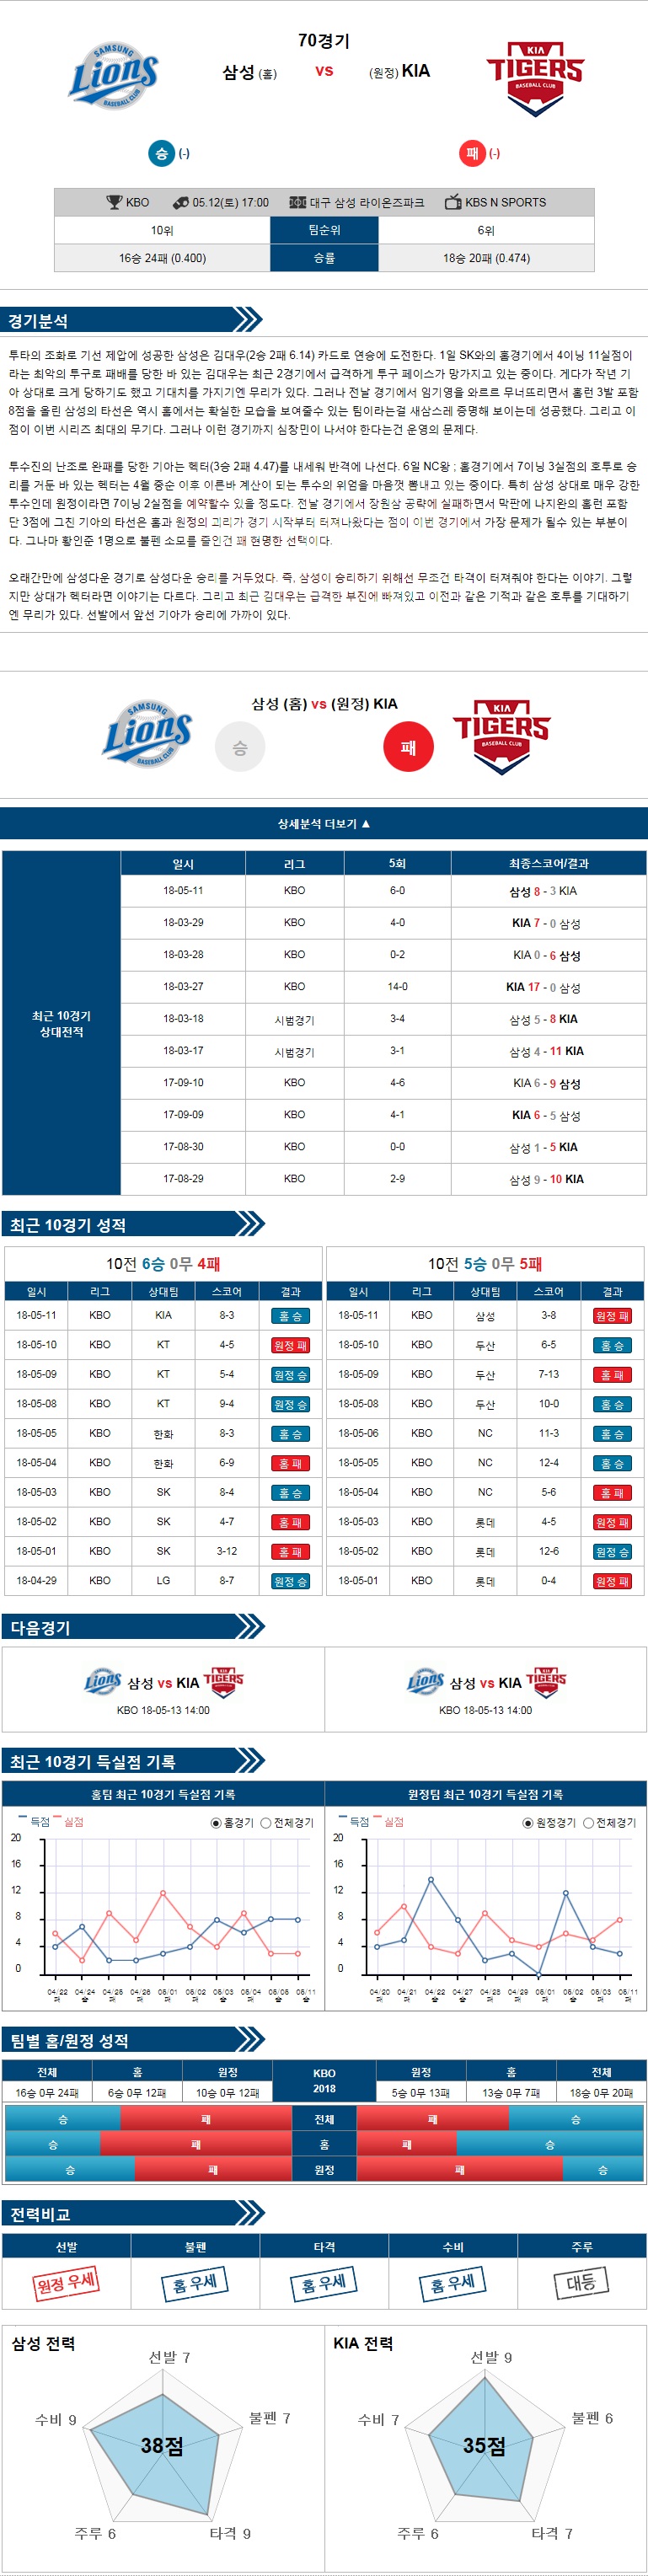 5-12 [KBO] 17:00 야구분석 삼성 vs KIA